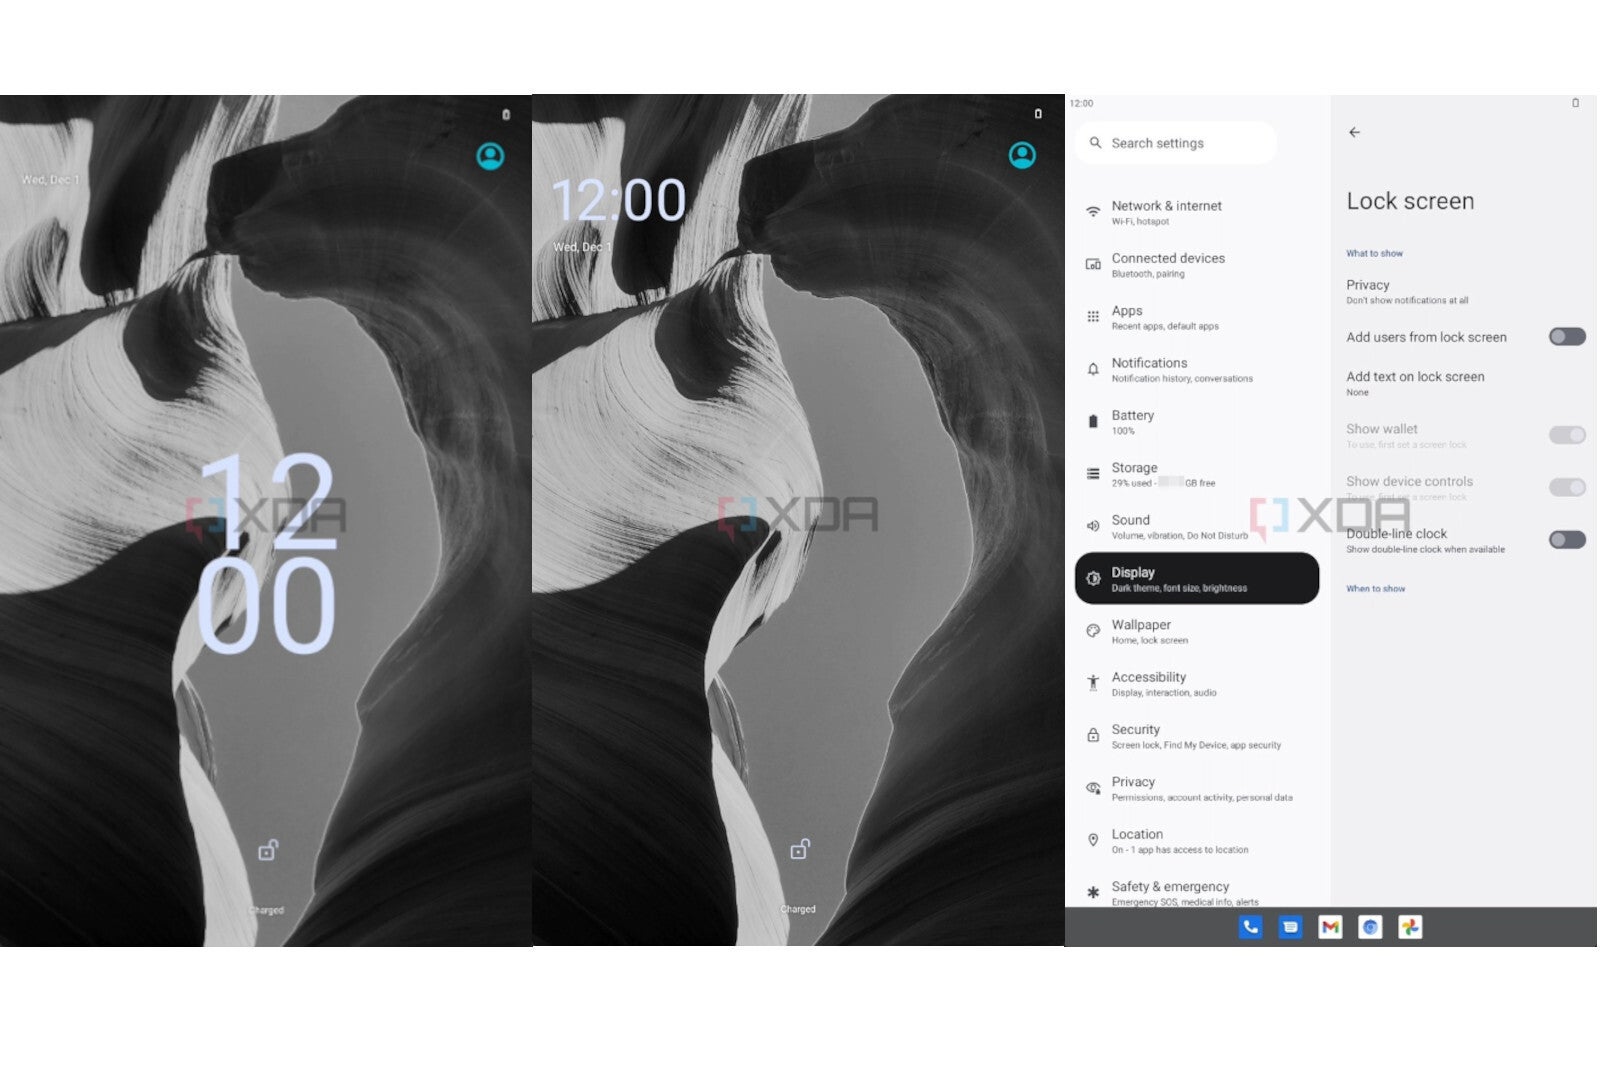 Tiramisu: The first real look at Android 13 (screenshots)